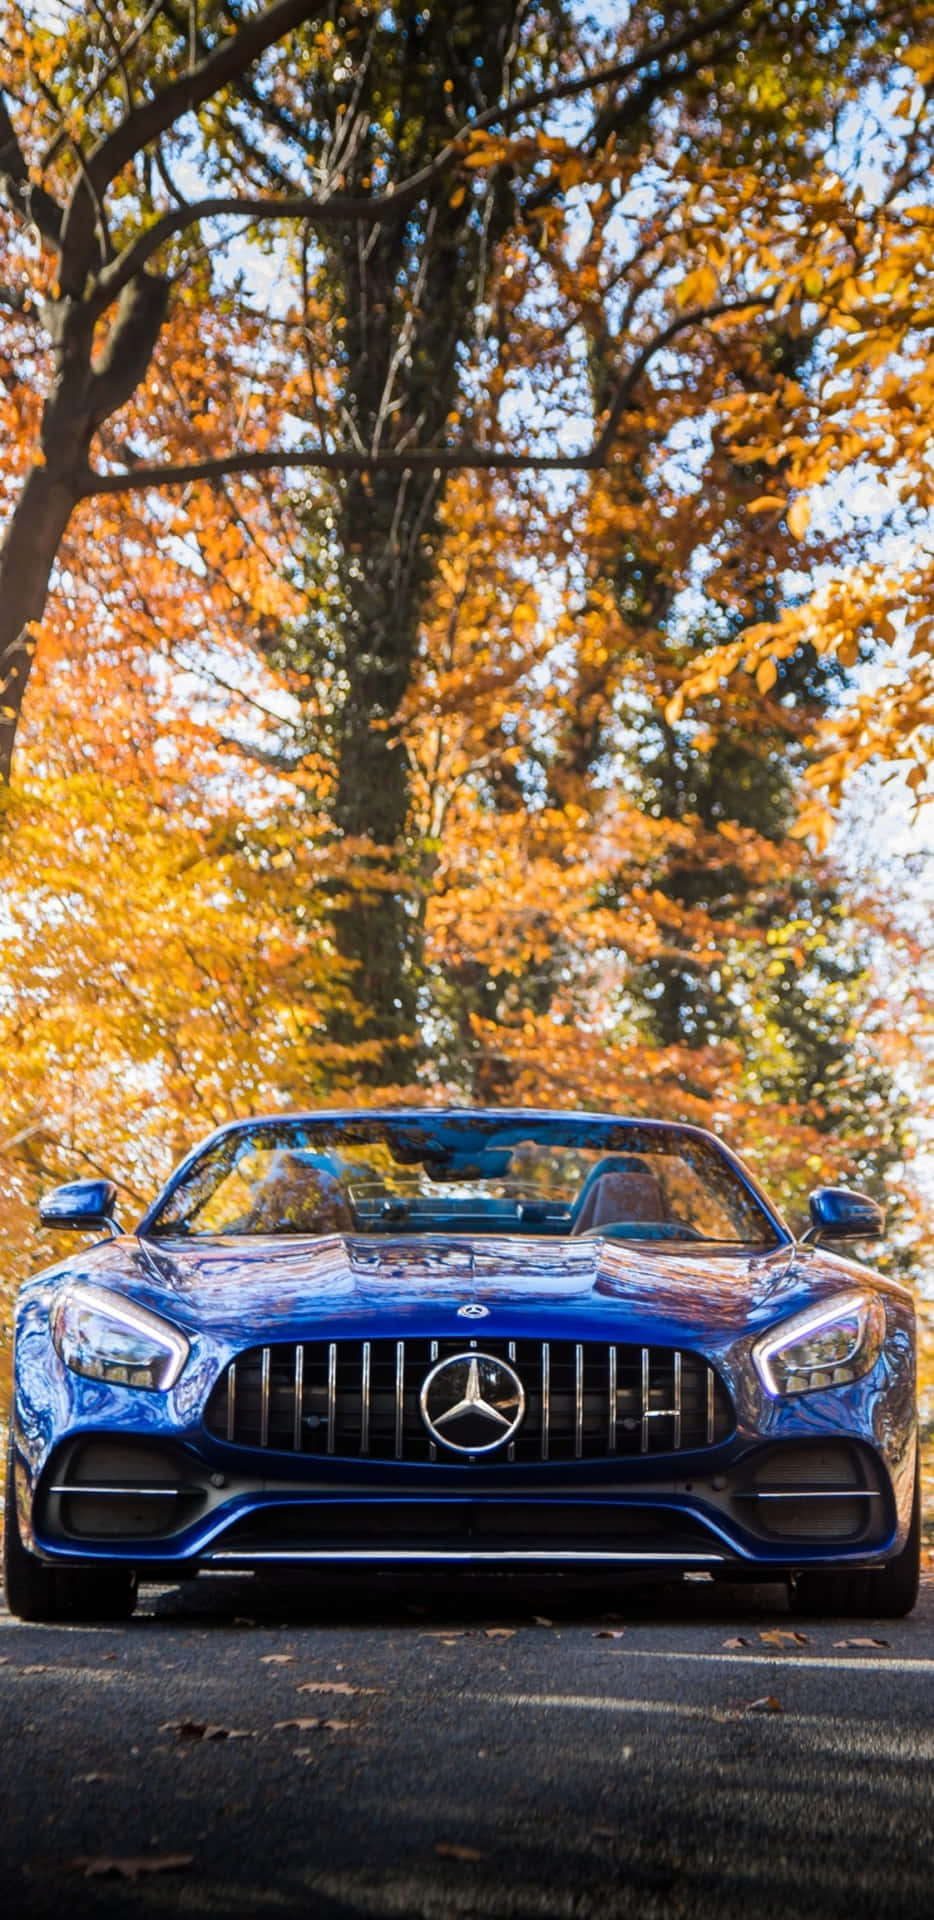 Fondode Pantalla Para Pixel 3xl Con Un Mercedes Azul Frente A Árboles De Otoño Amg Gt-r.